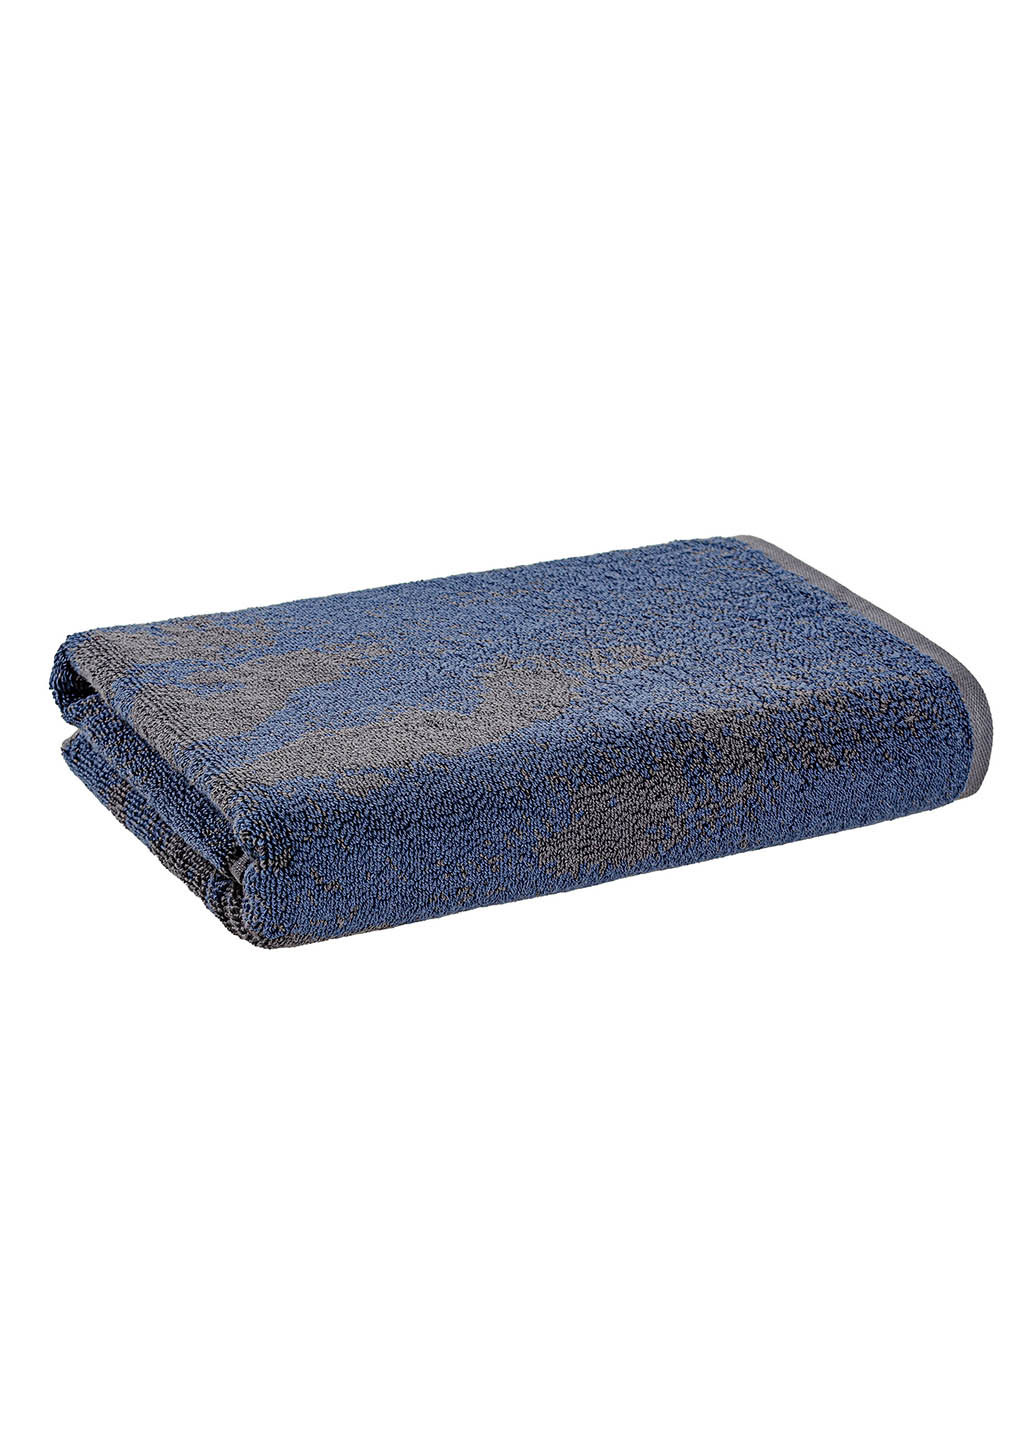 Home Line полотенце махровое 70х140 500 г/м2 синий производство - Турция